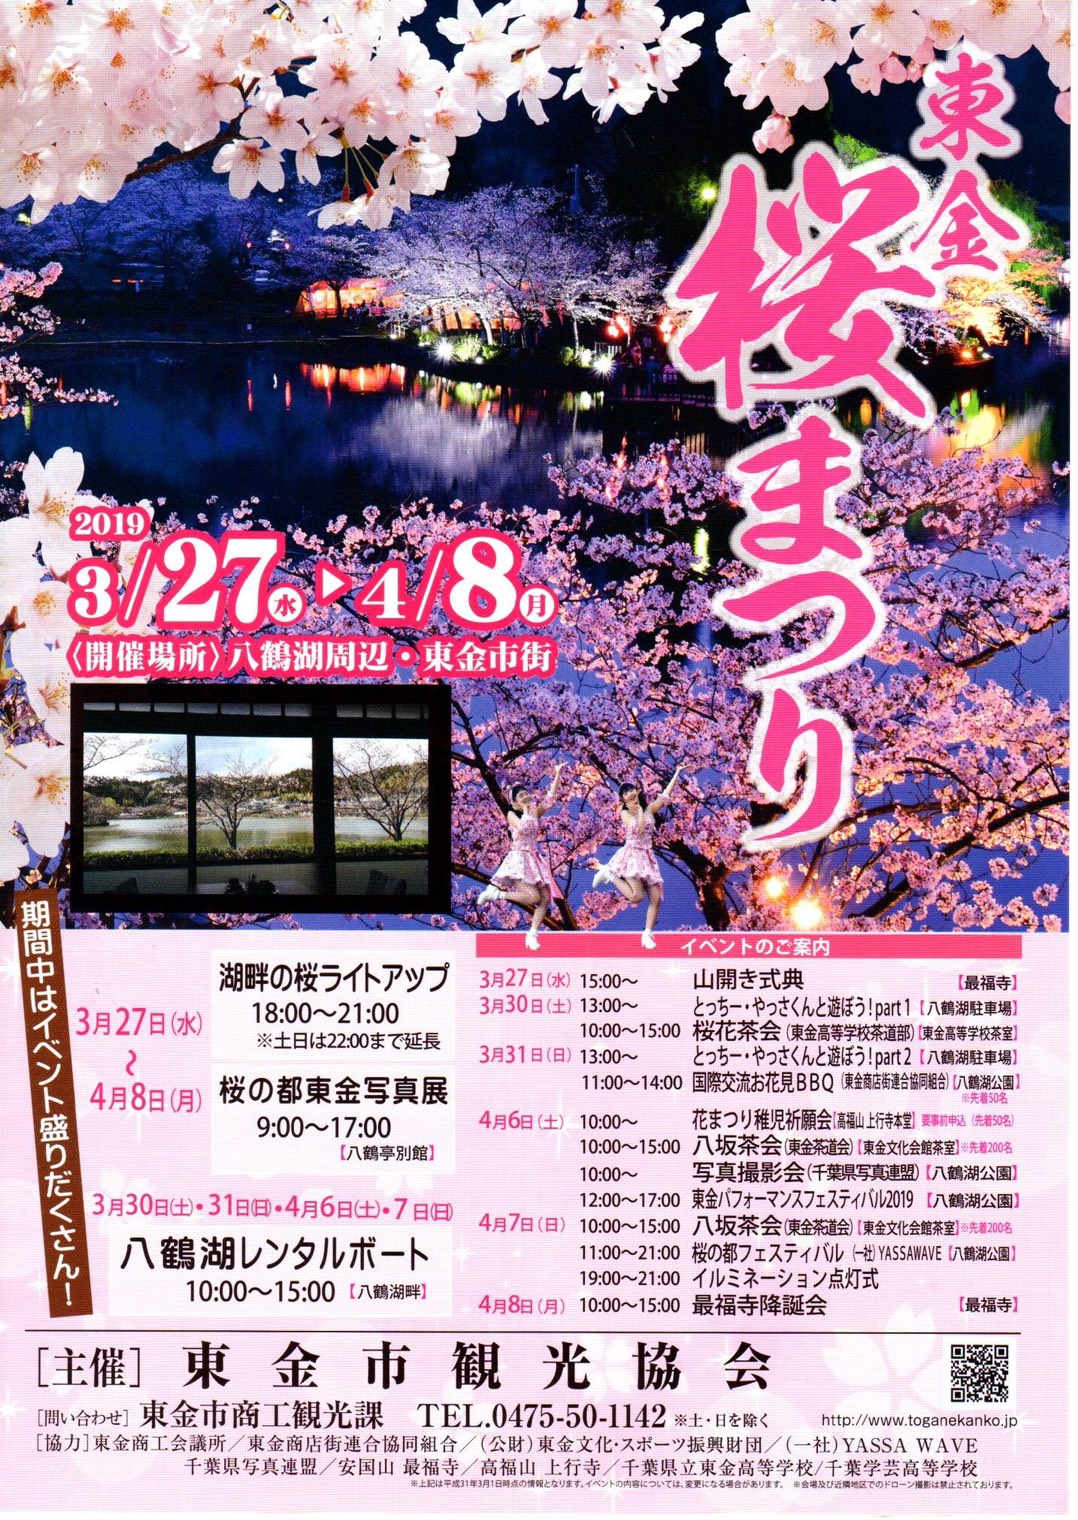 19東金桜まつりは3月27日 水 から開催 4 8まで 道の駅 みのりの郷東金 千葉県東金市